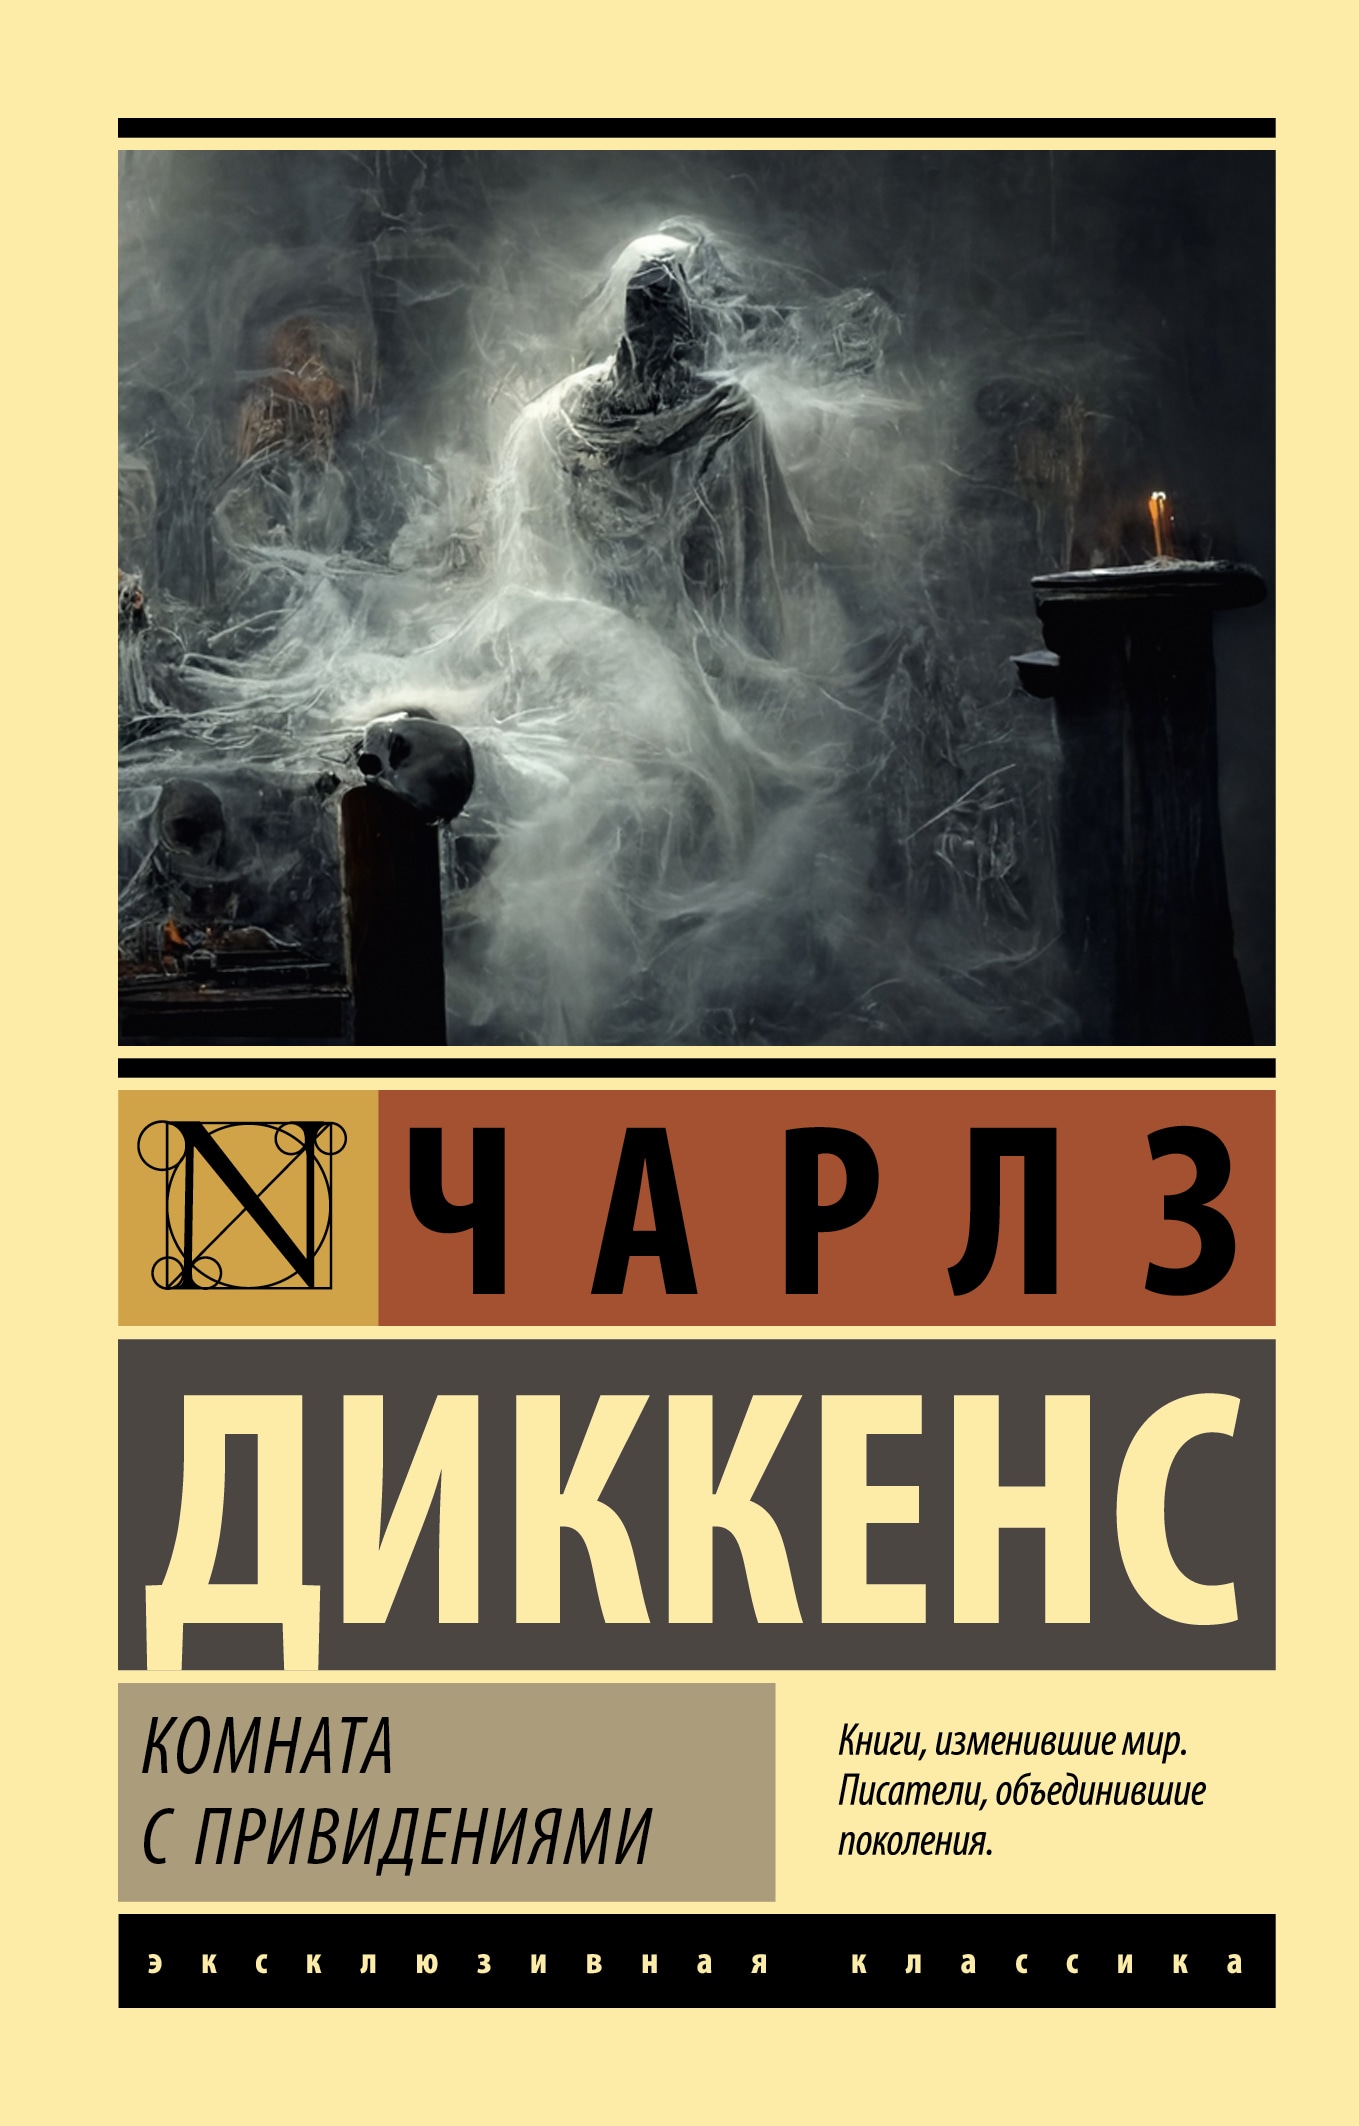 Book “Комната с привидениями” by Чарльз Диккенс, Романова Екатерина Ильинична — 2022